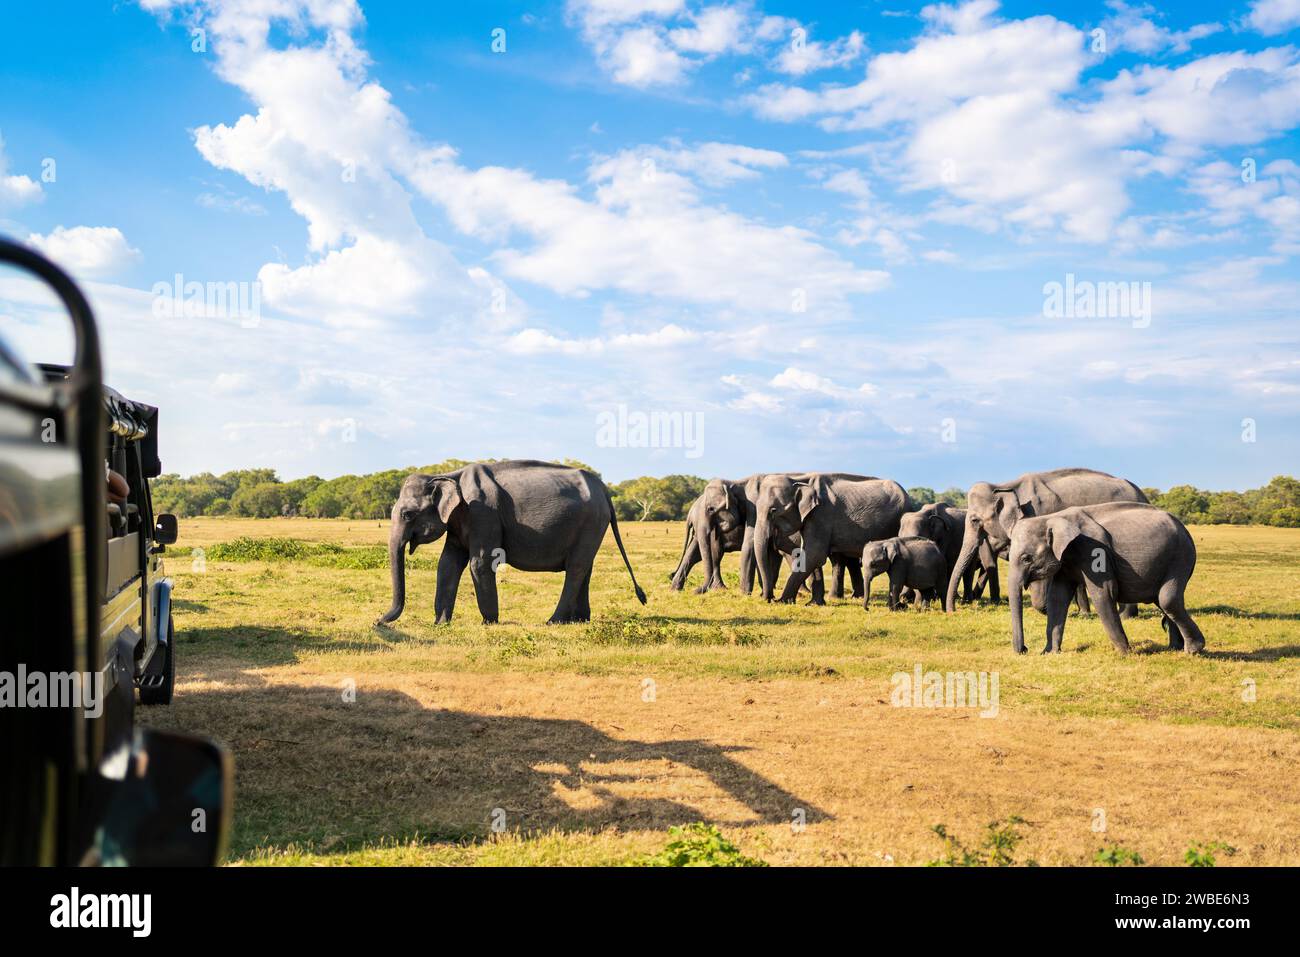 Safari mit Elefanten. Sri Lanka, Nationalpark. Geländewagen-Tourismus. Wildtierfahrt und Wildtiertour für Touristen. Tierbeobachtung vom Auto aus. Stockfoto